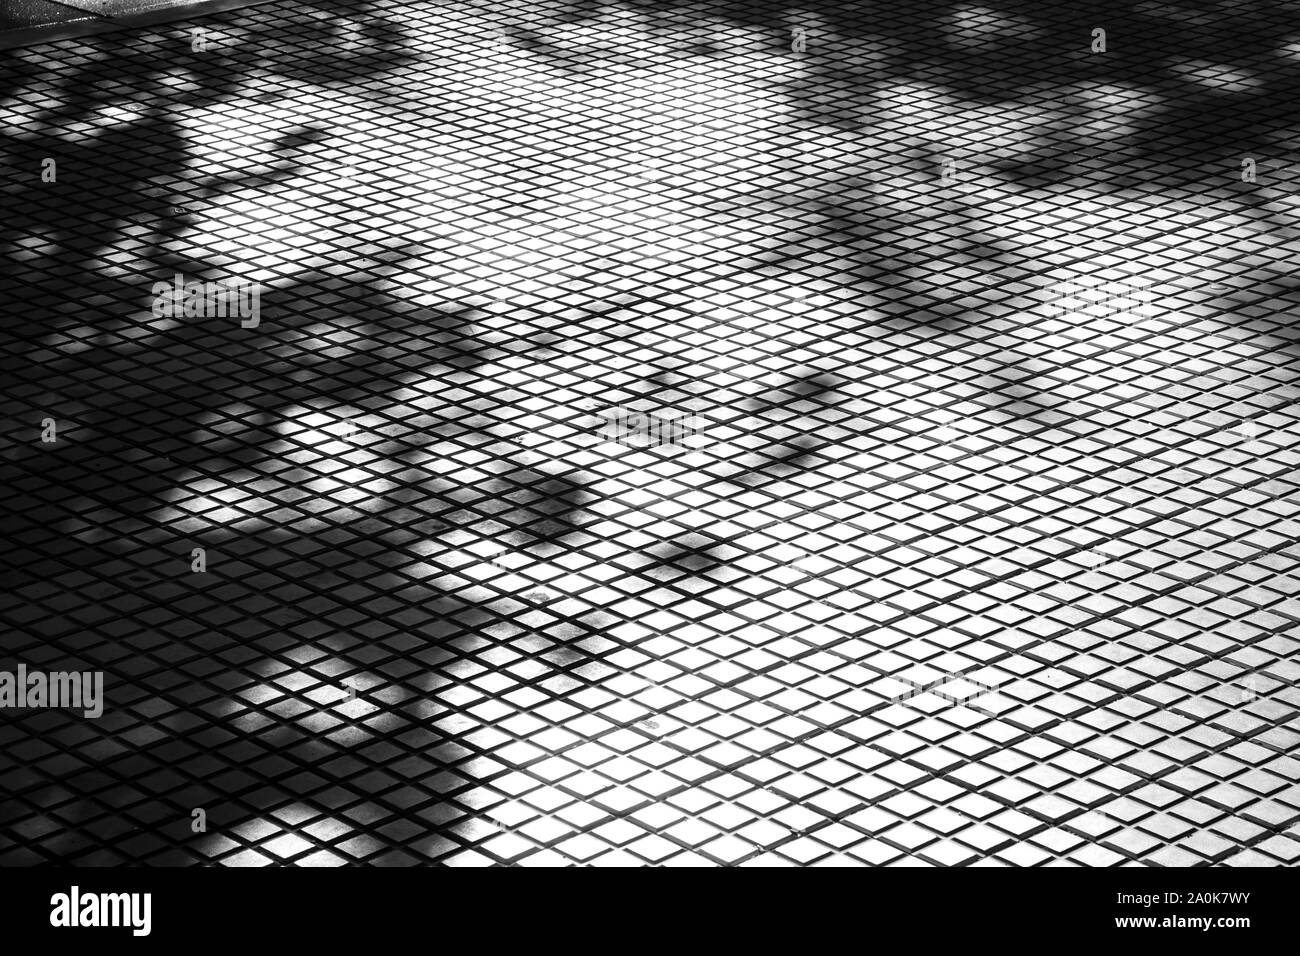 Schatten von Bäumen auf Fliesen- stadt Bürgersteig, abstrakten architektonischen Hintergrund in hoher Kontrast schwarz und weiß Stockfoto